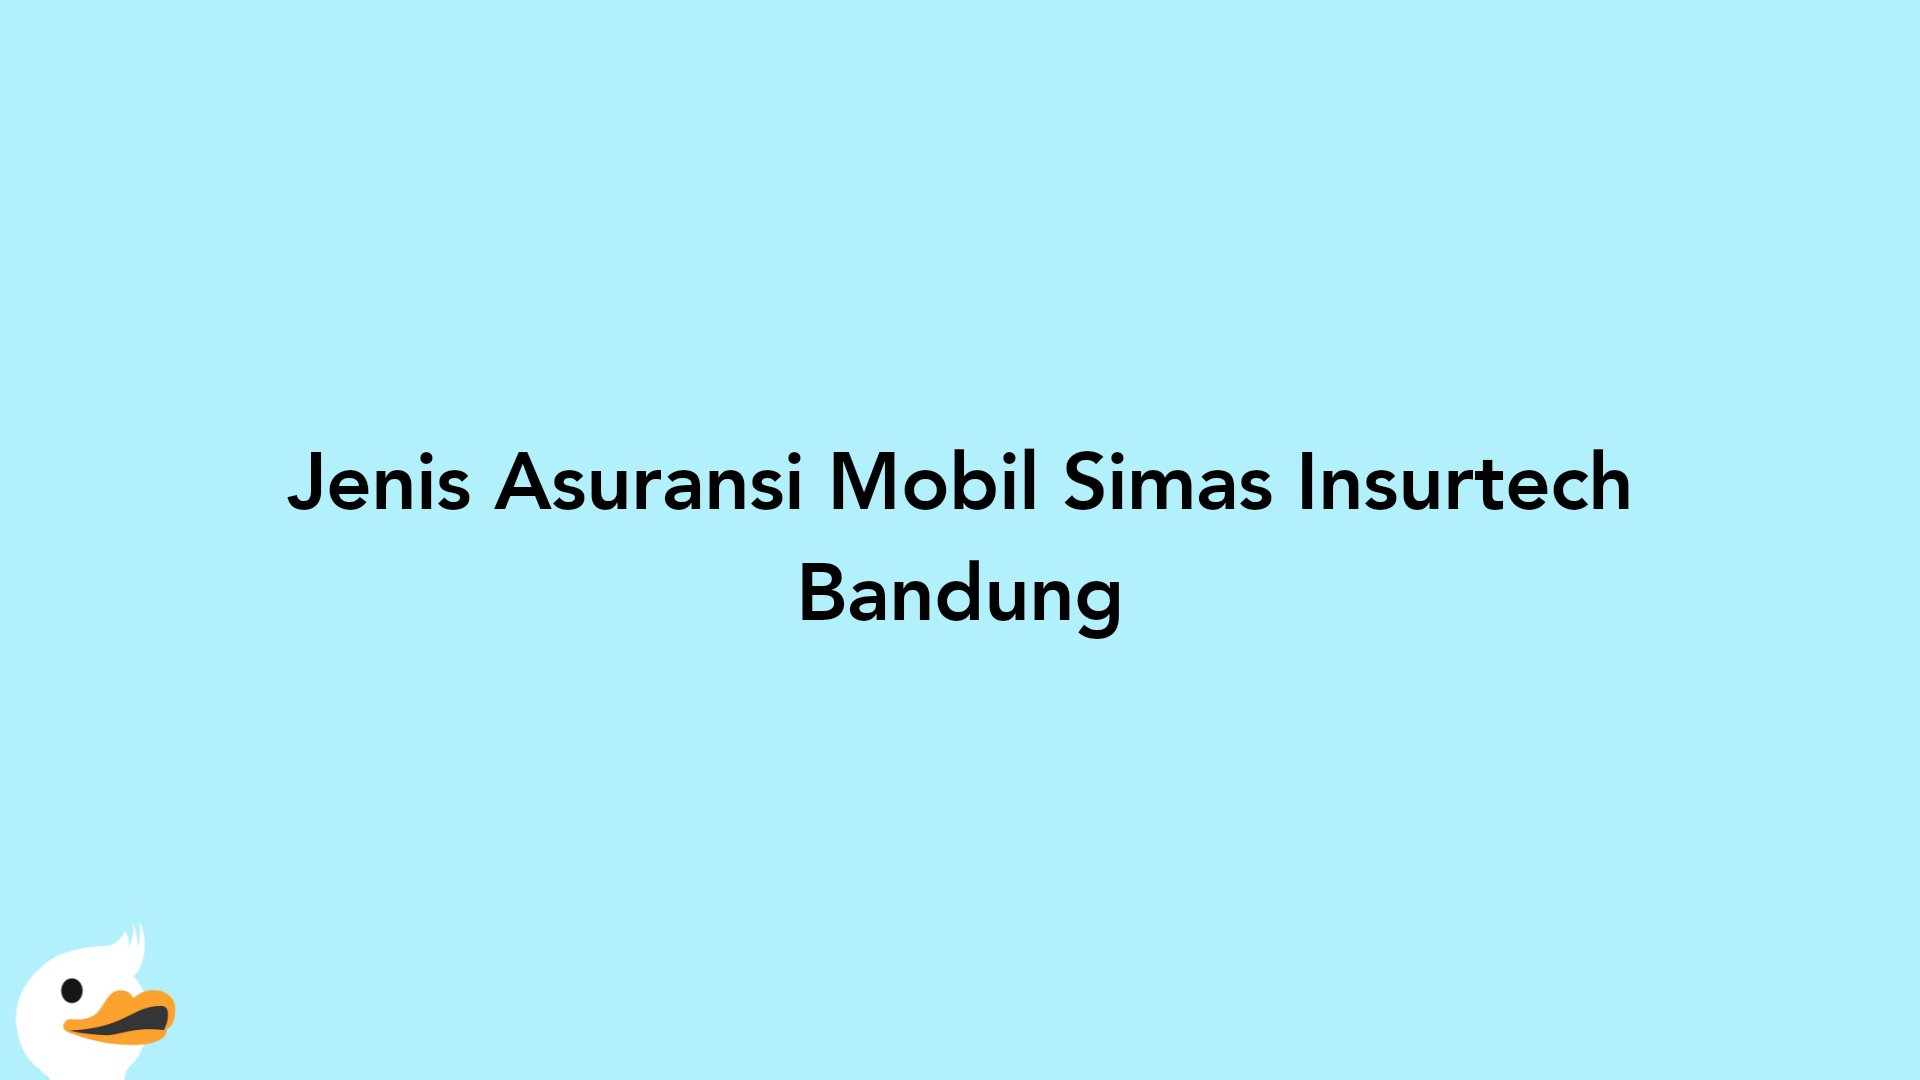 Jenis Asuransi Mobil Simas Insurtech Bandung